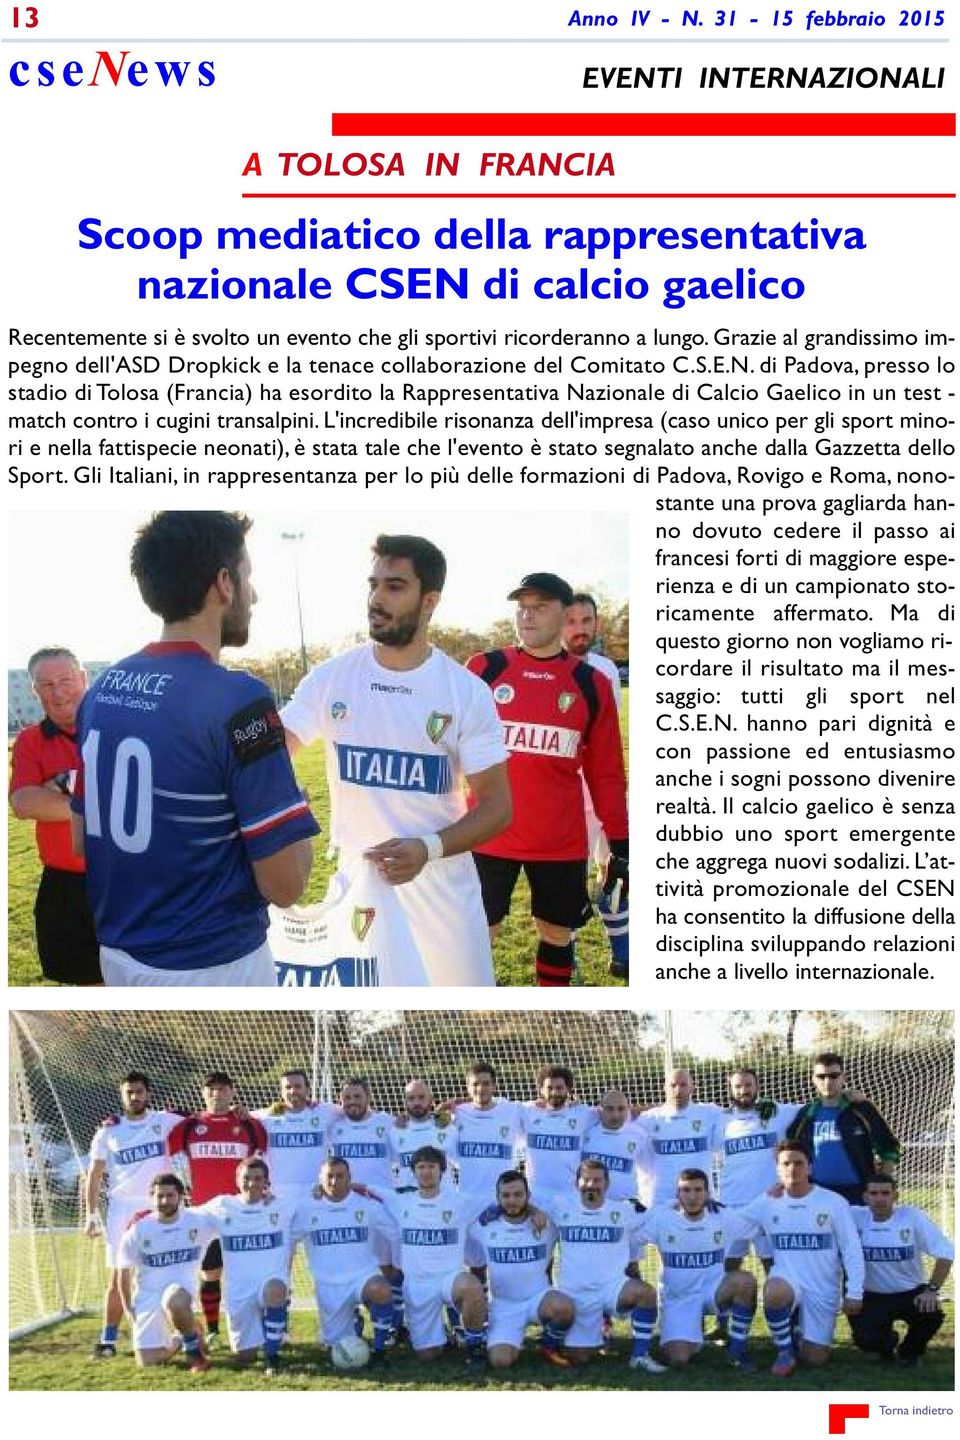 di Padova, presso lo stadio di Tolosa (Francia) ha esordito la Rappresentativa Nazionale di Calcio Gaelico in un test - match contro i cugini transalpini.